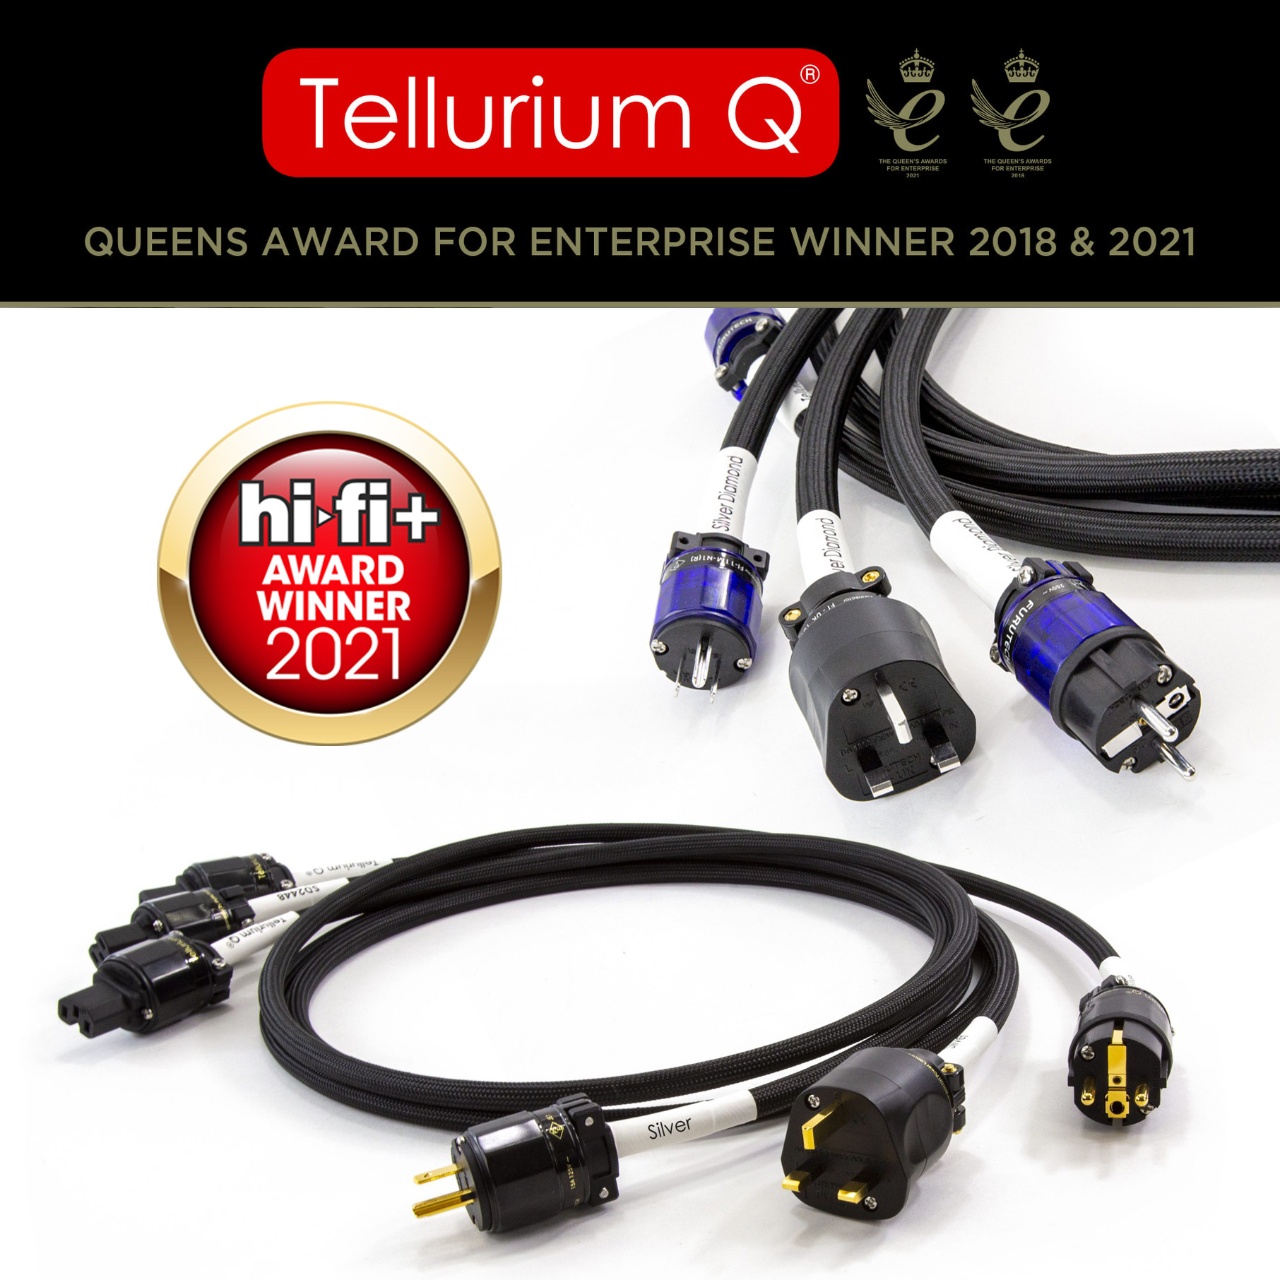 Tellurium Q zum Jahresende mit 3 Product of the Year Awards  ...